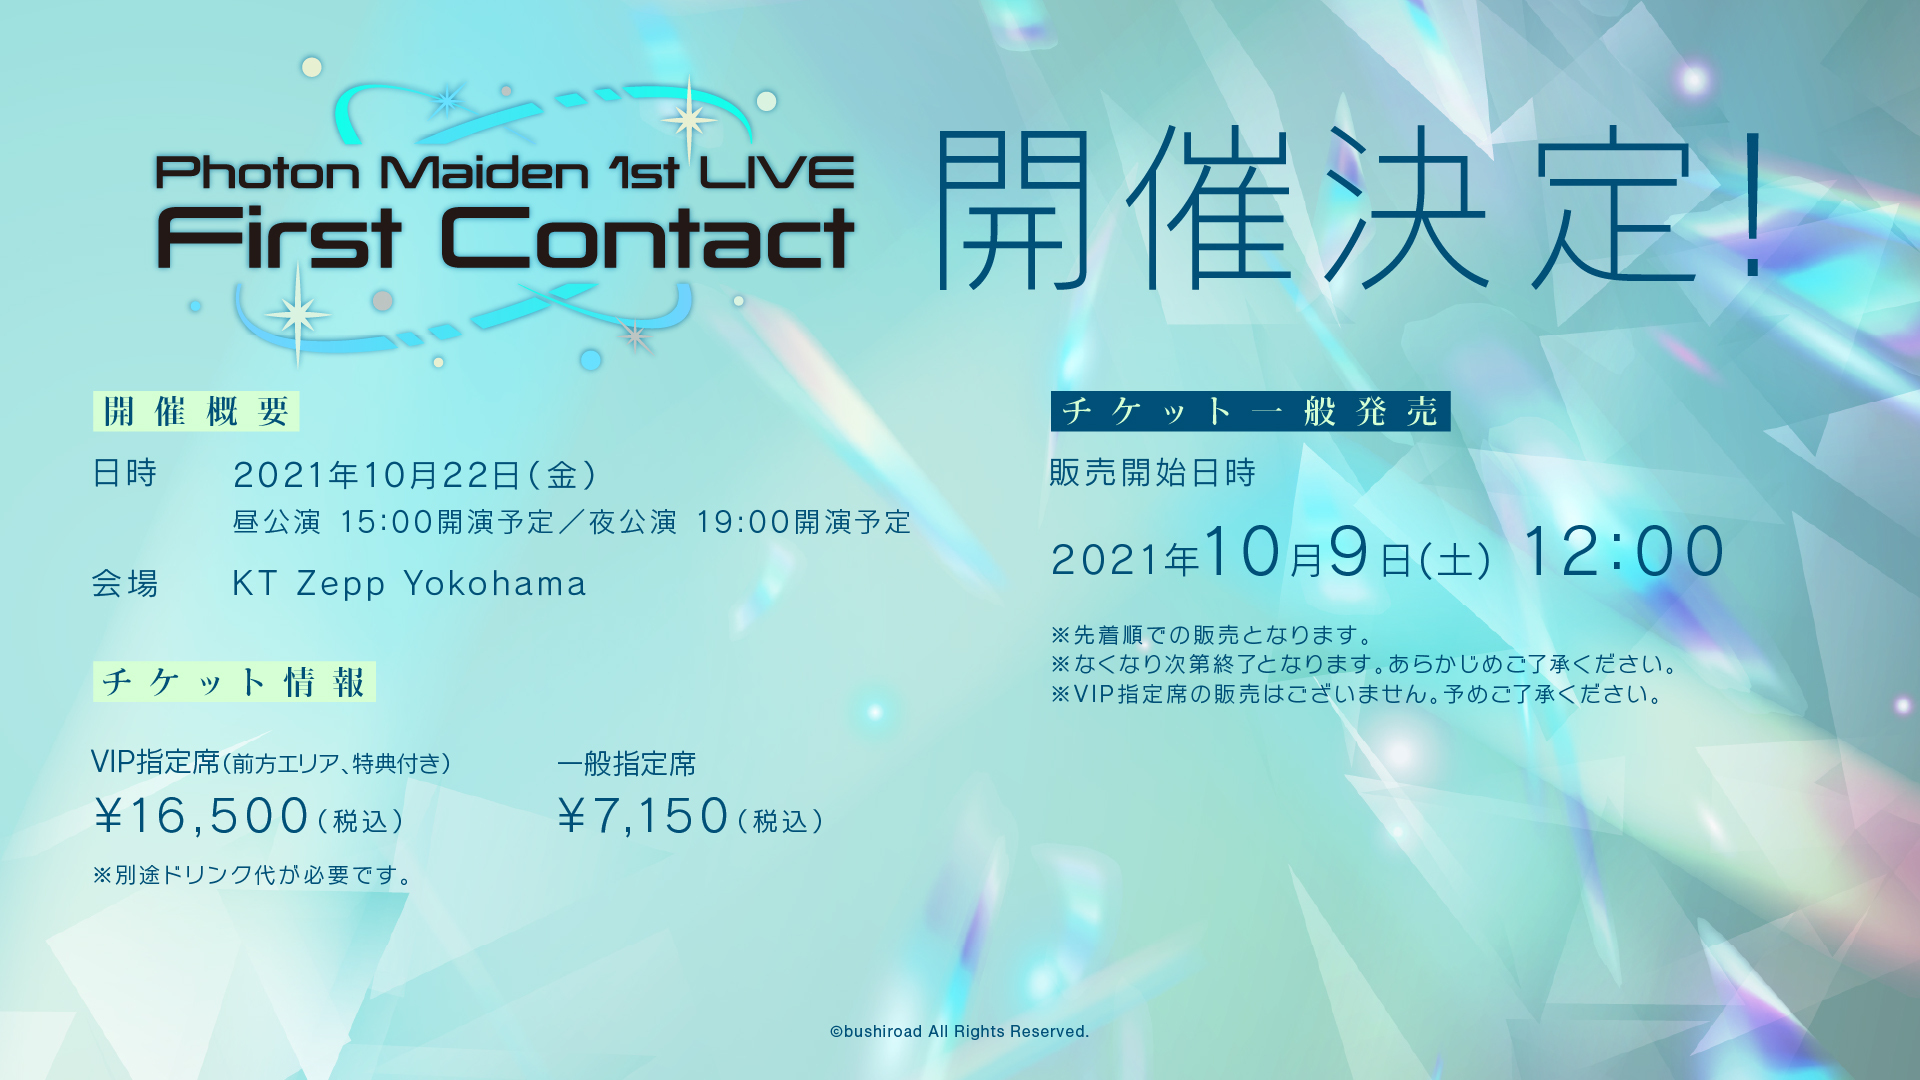 10 9 土 12時 チケット一般発売 Photon Maiden 1st Live First Contact News D4dj ディーフォーディージェー 公式サイト